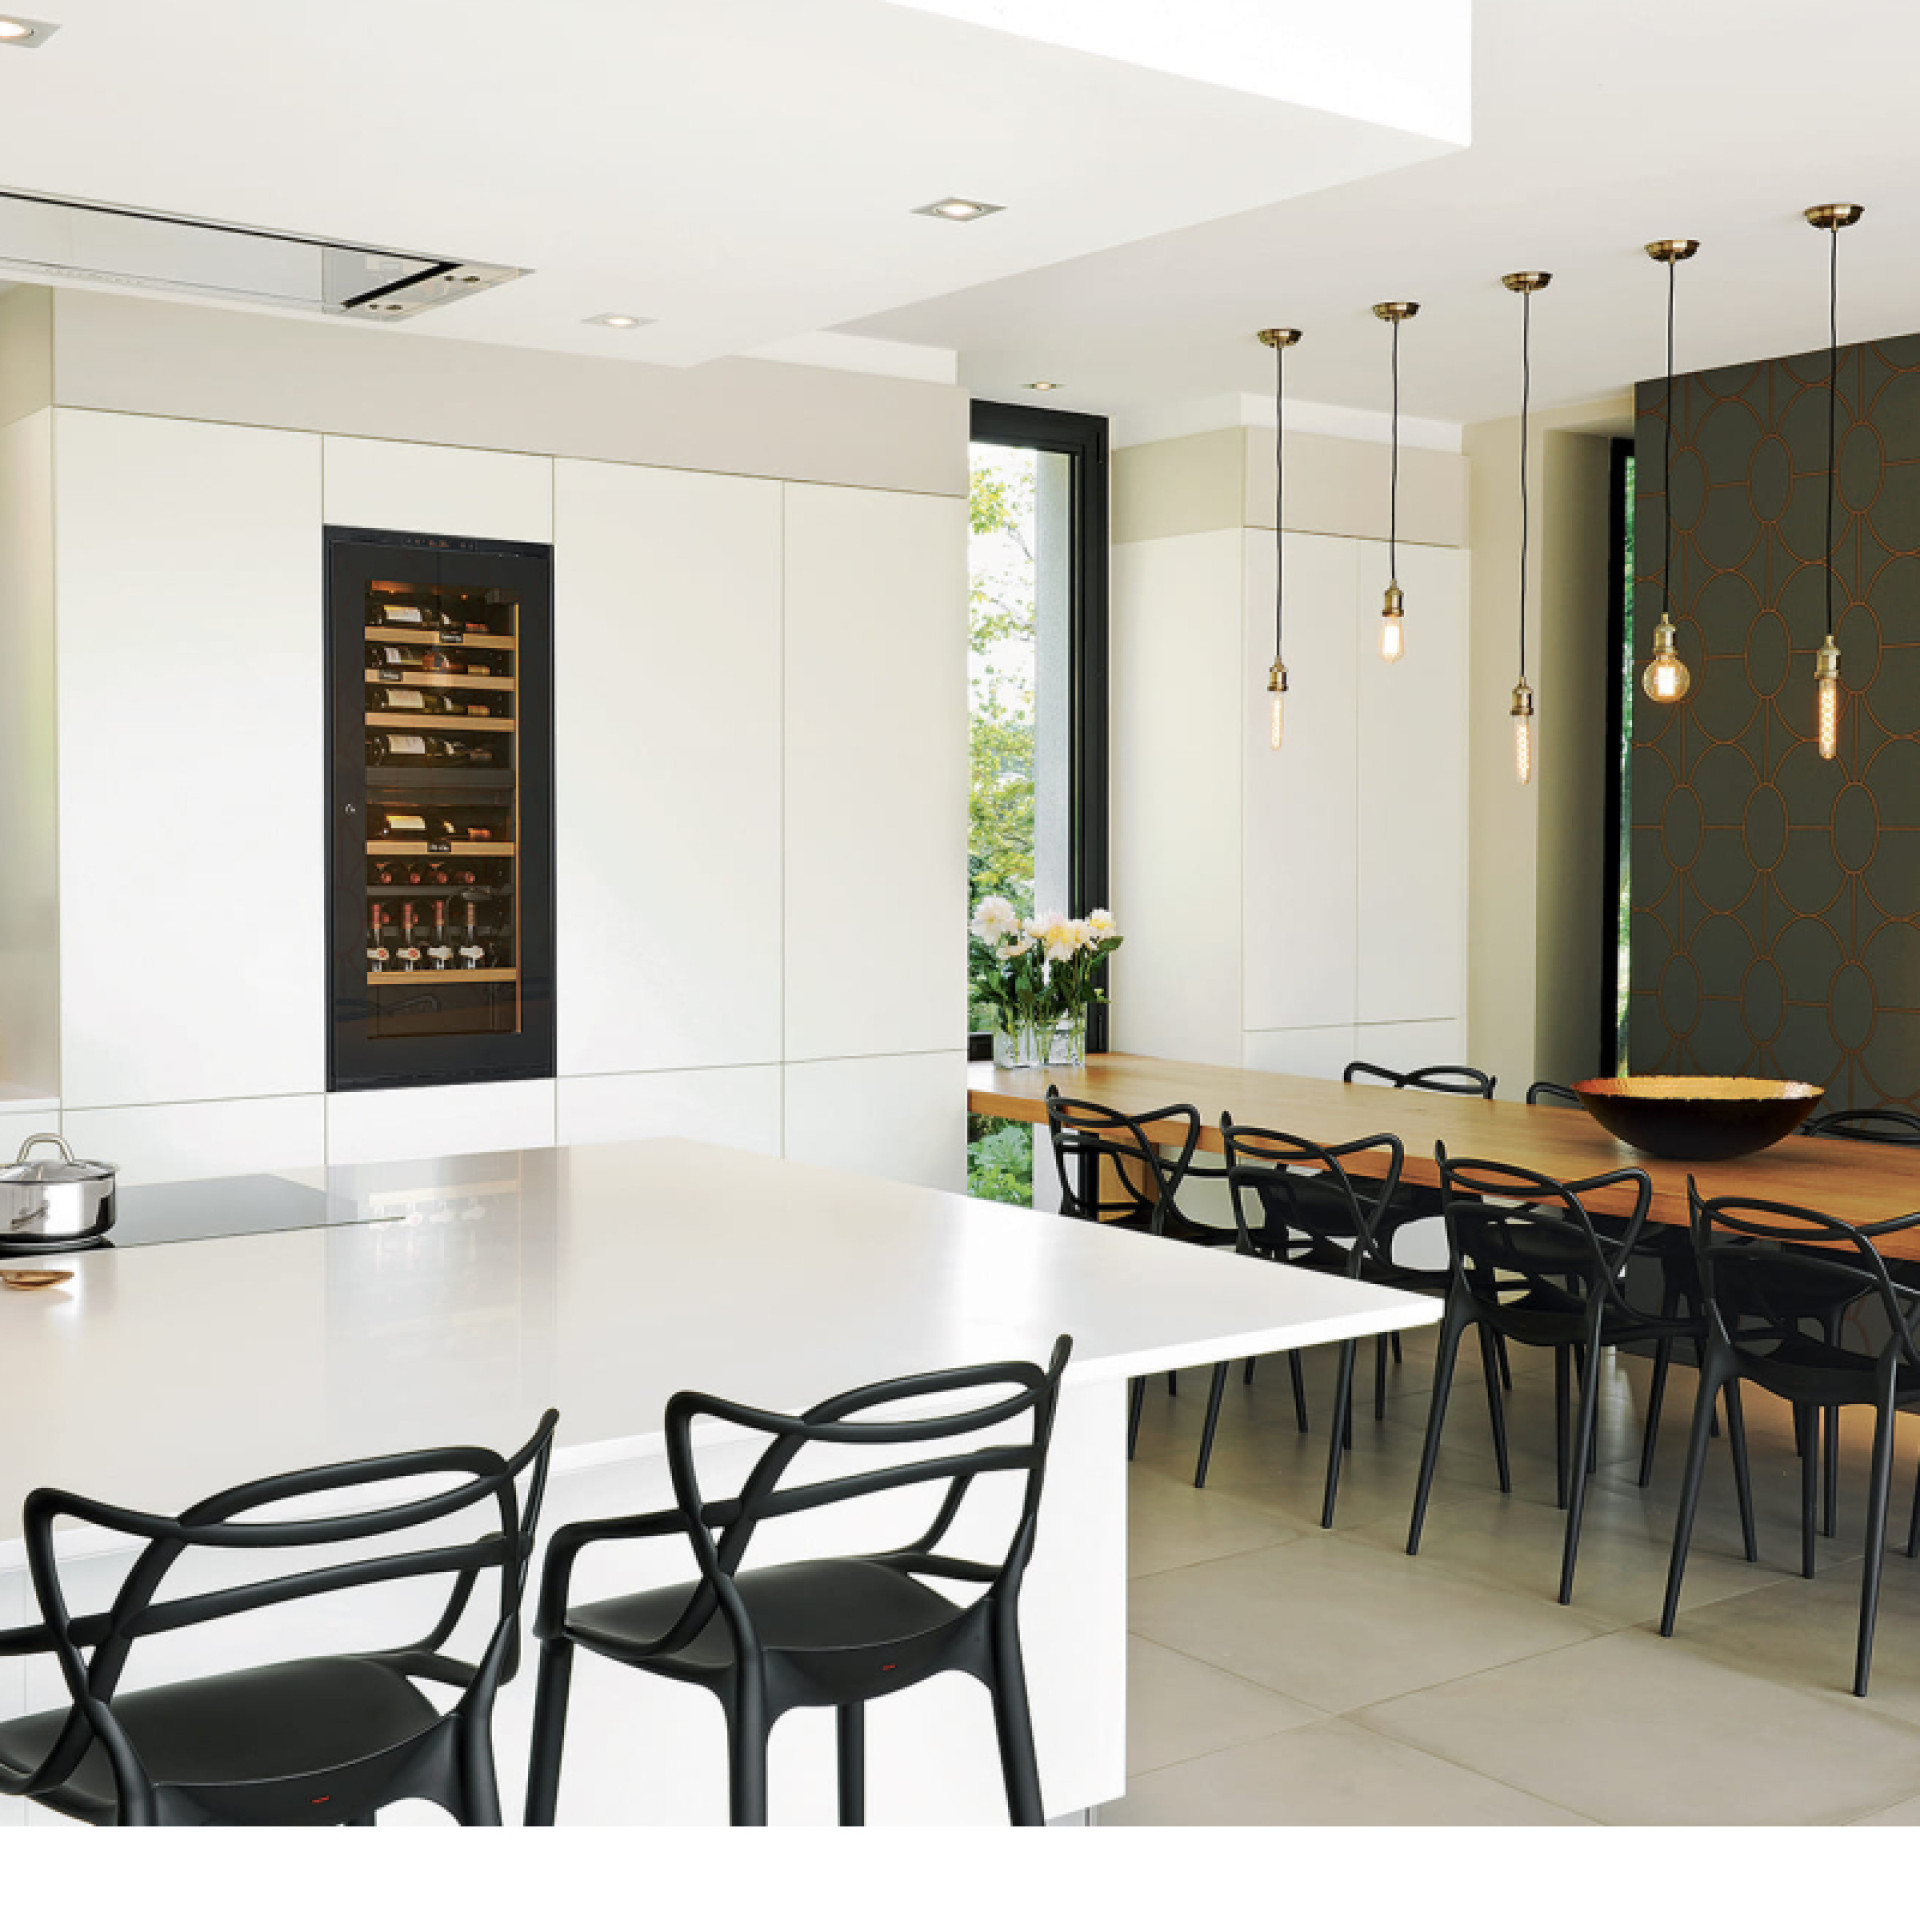 Service-Weinkhülschrank integriert in einen maßgefertigten Wandschrank in einer weißen und hölzernen Einbauküche – Renovierung durch Innenarchitekten.